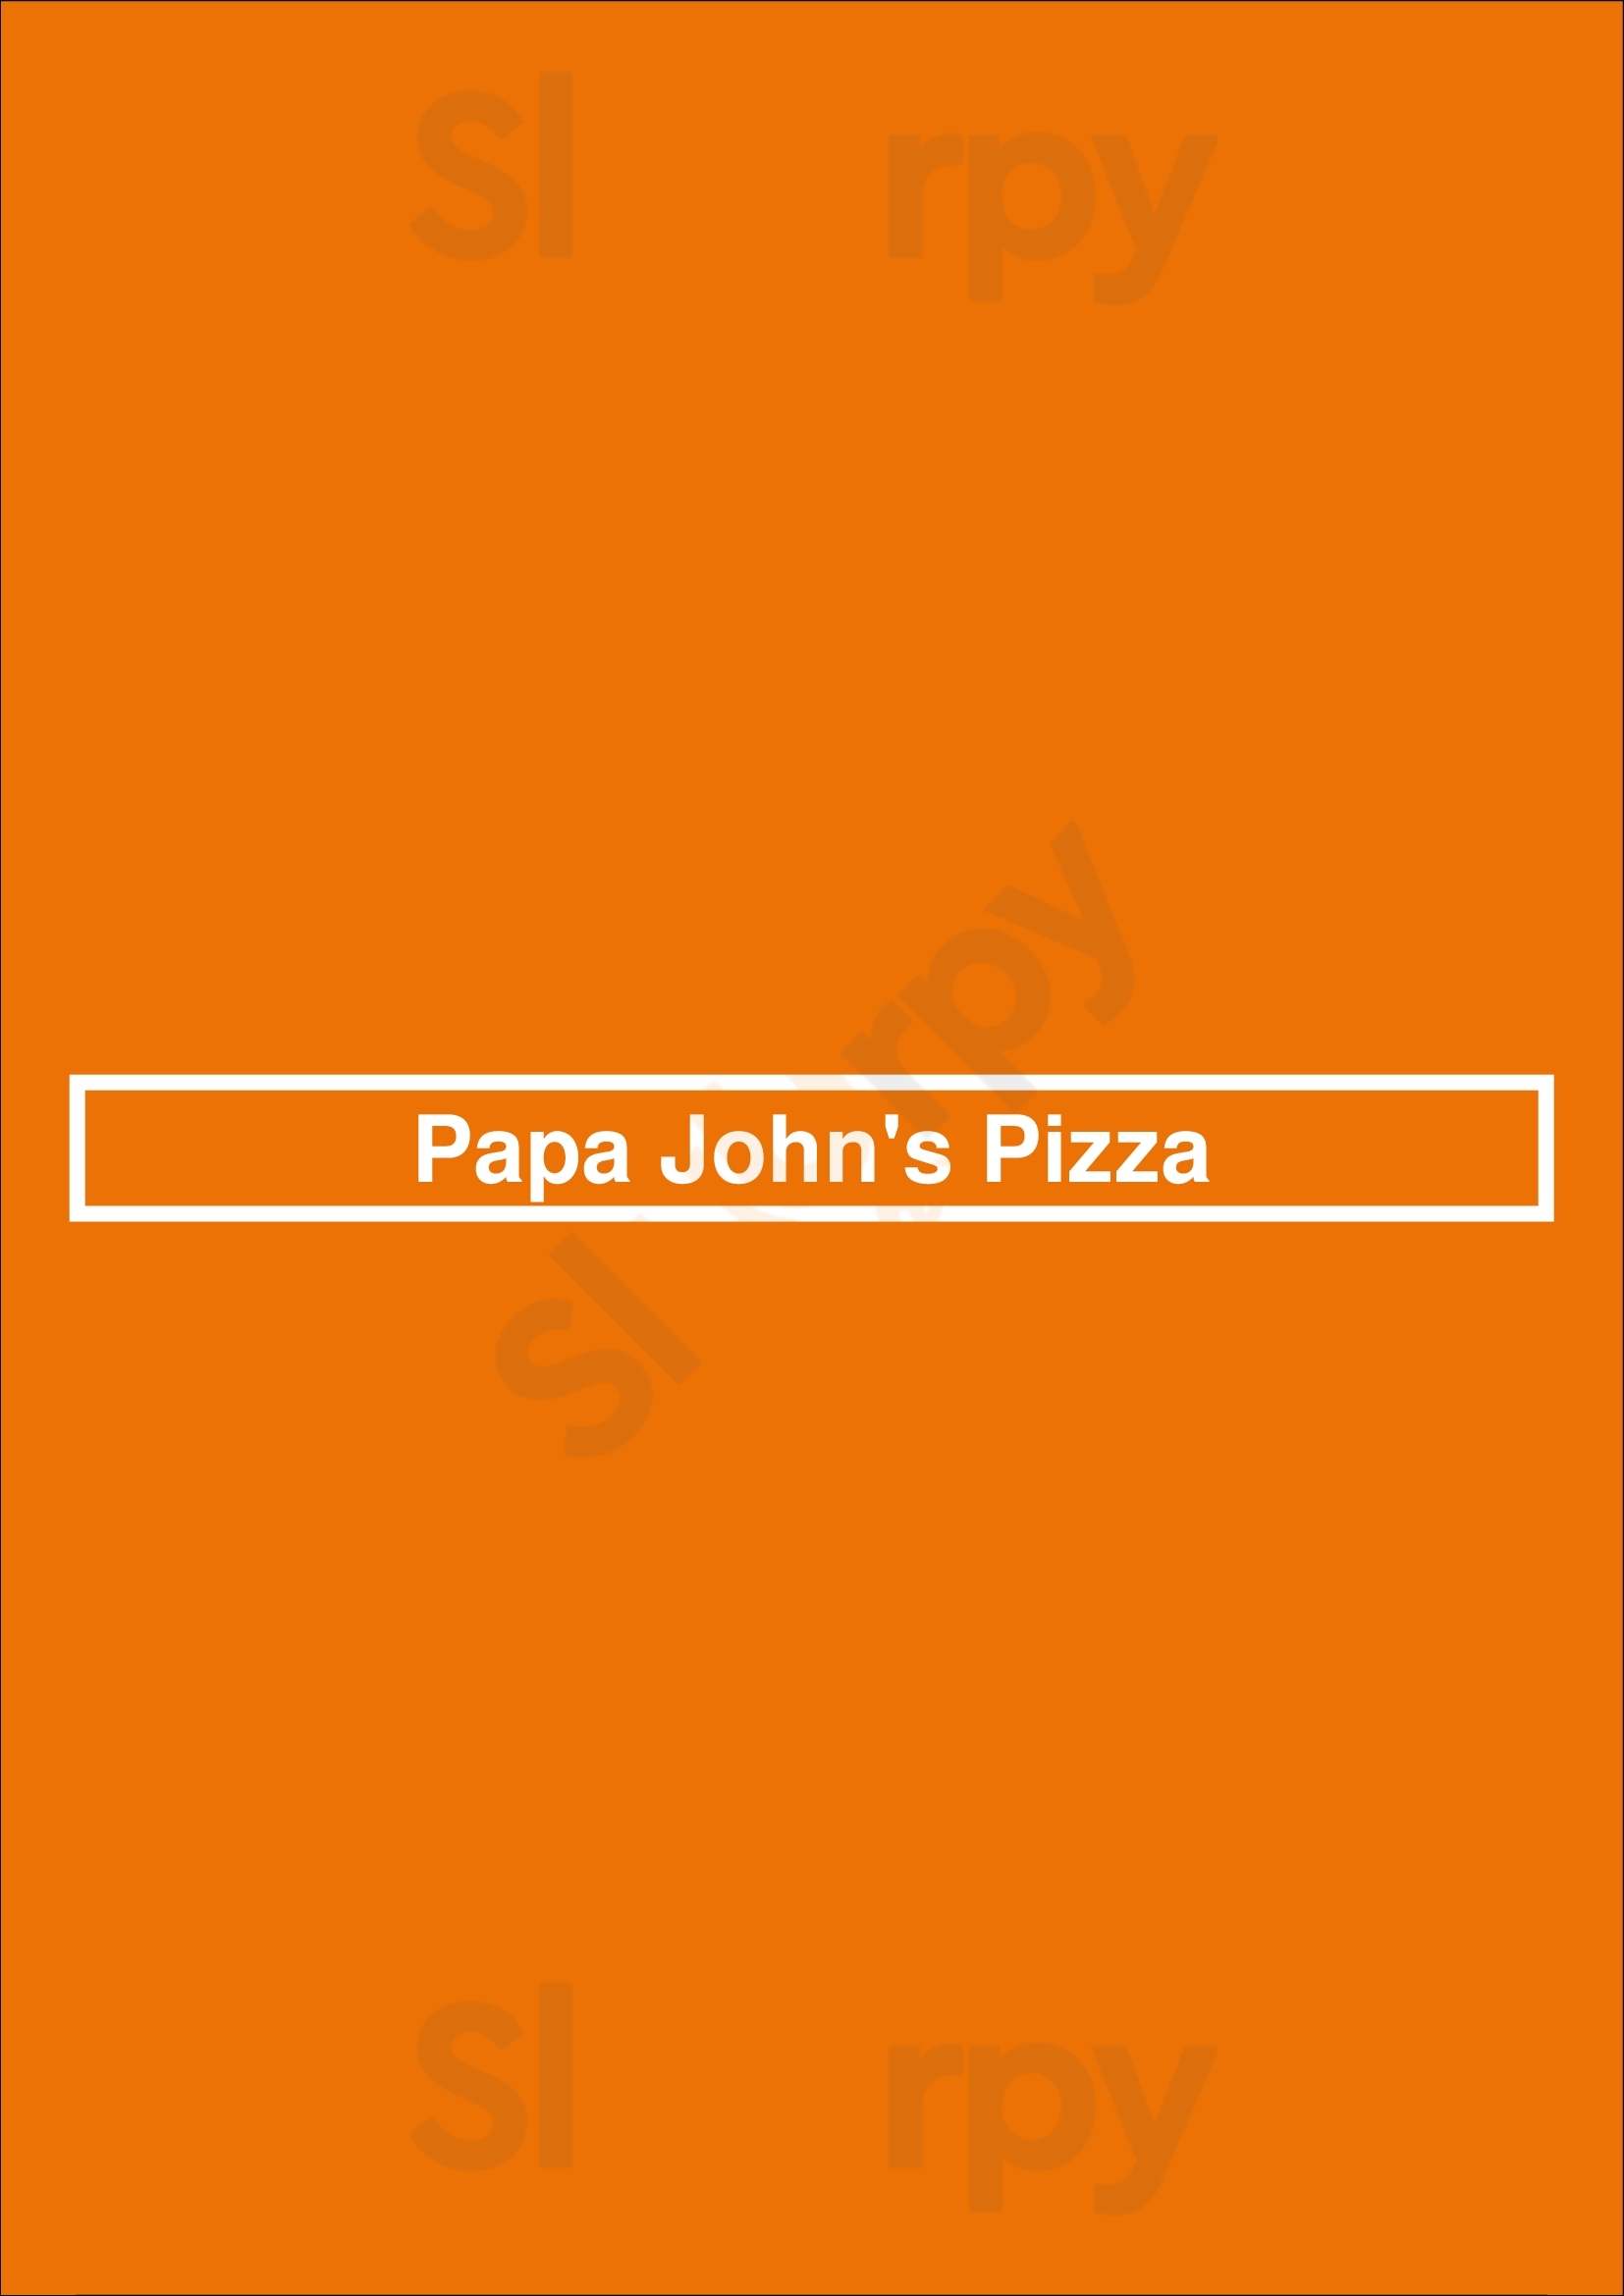 Papa John's Pizza Worthing Menu - 1